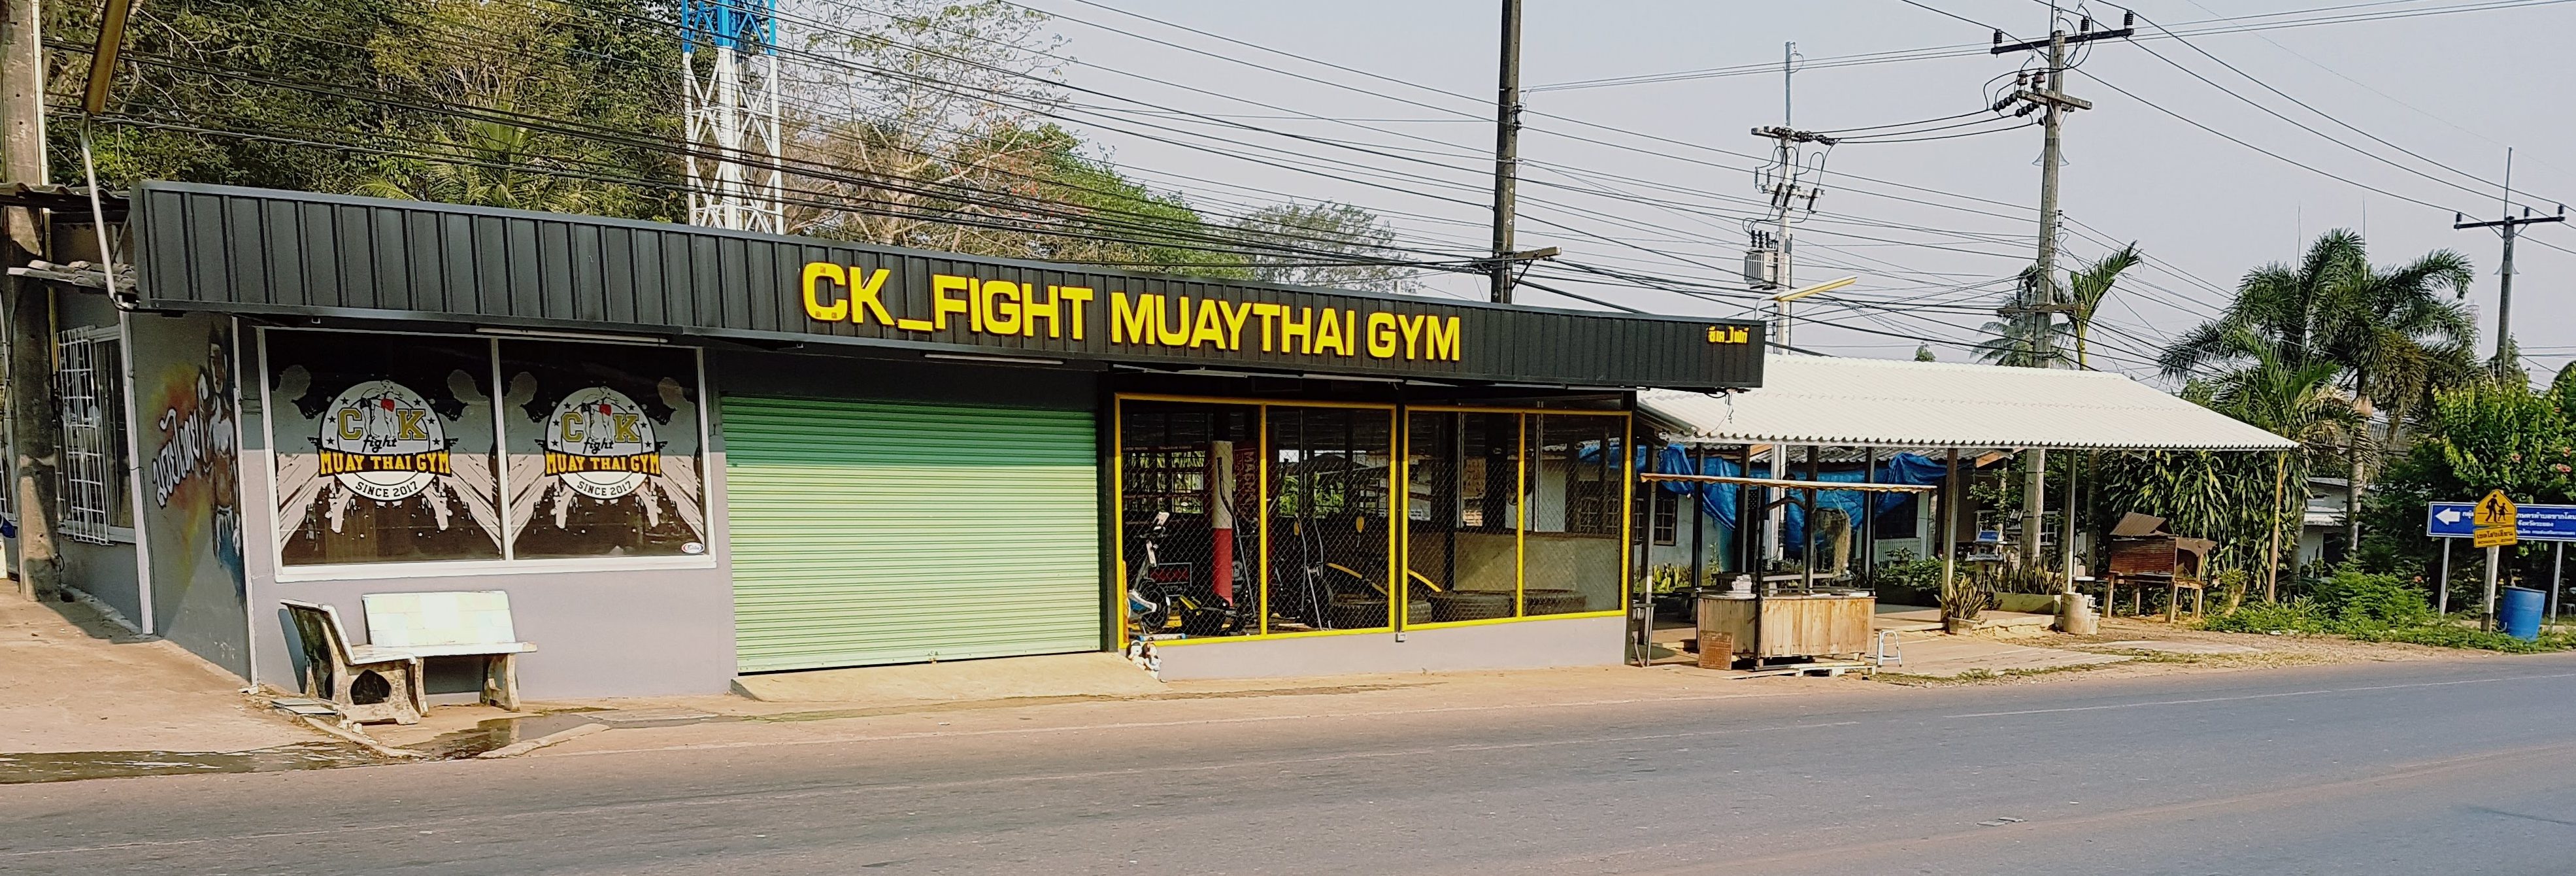 Gym som erbjuder thaiboxning som träning